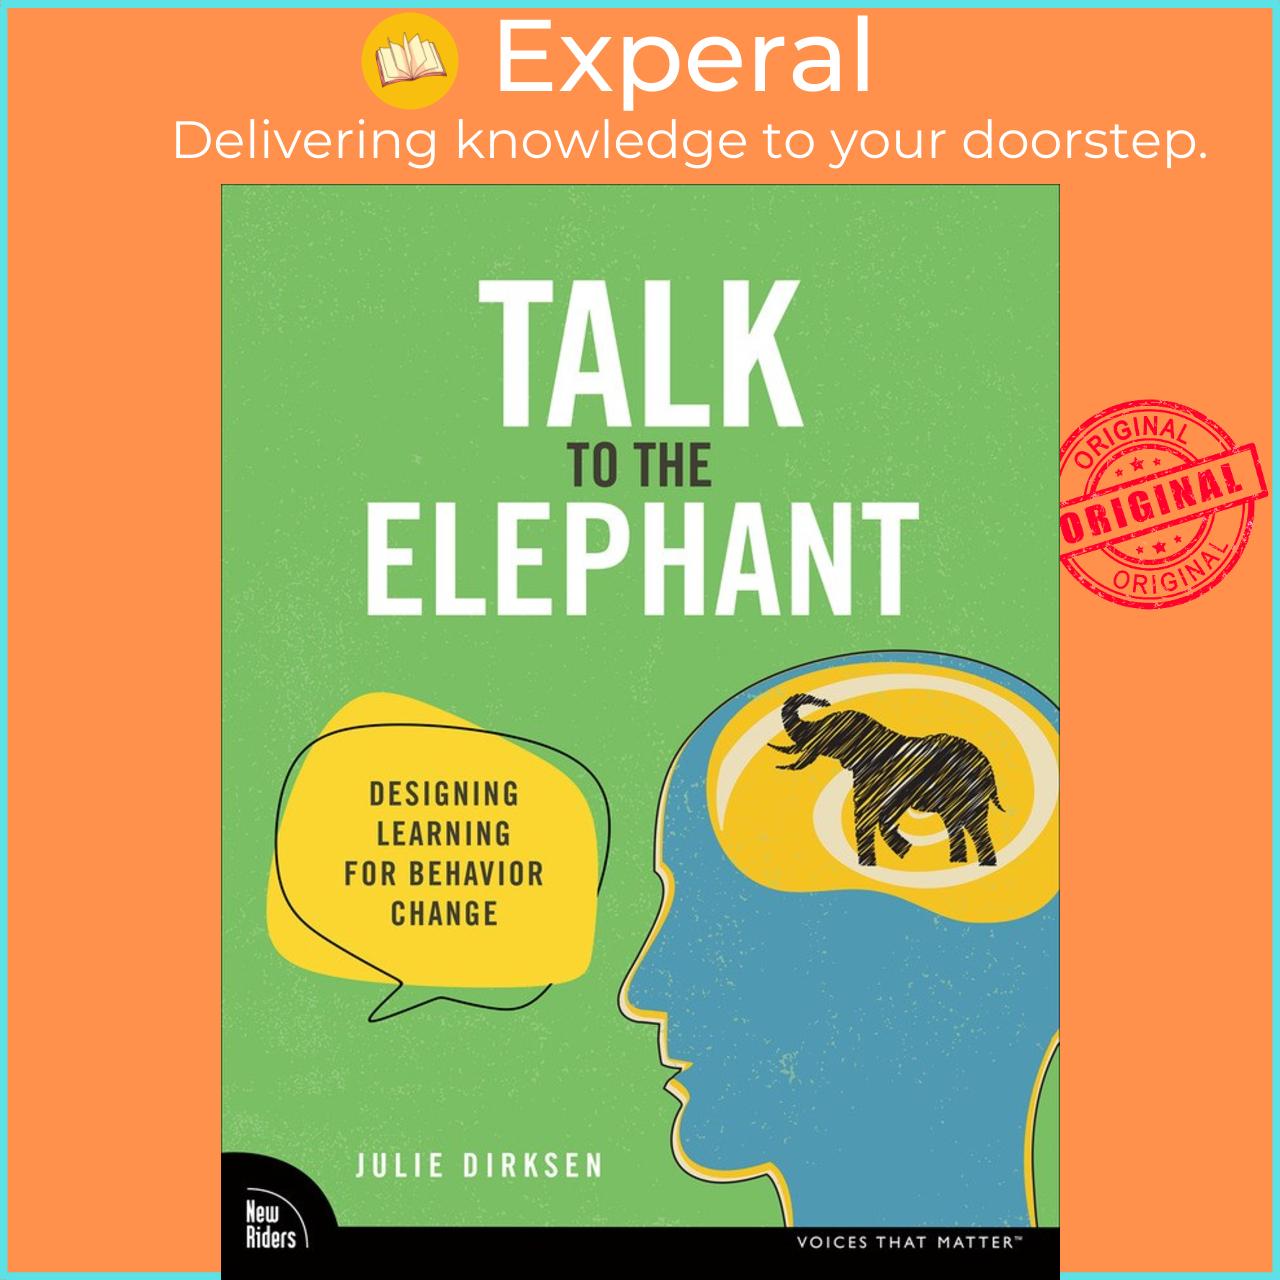 Sách - Talk to the Elephant - Design Learning for Behavior Change by Julie Dirksen (UK edition, Paperback)